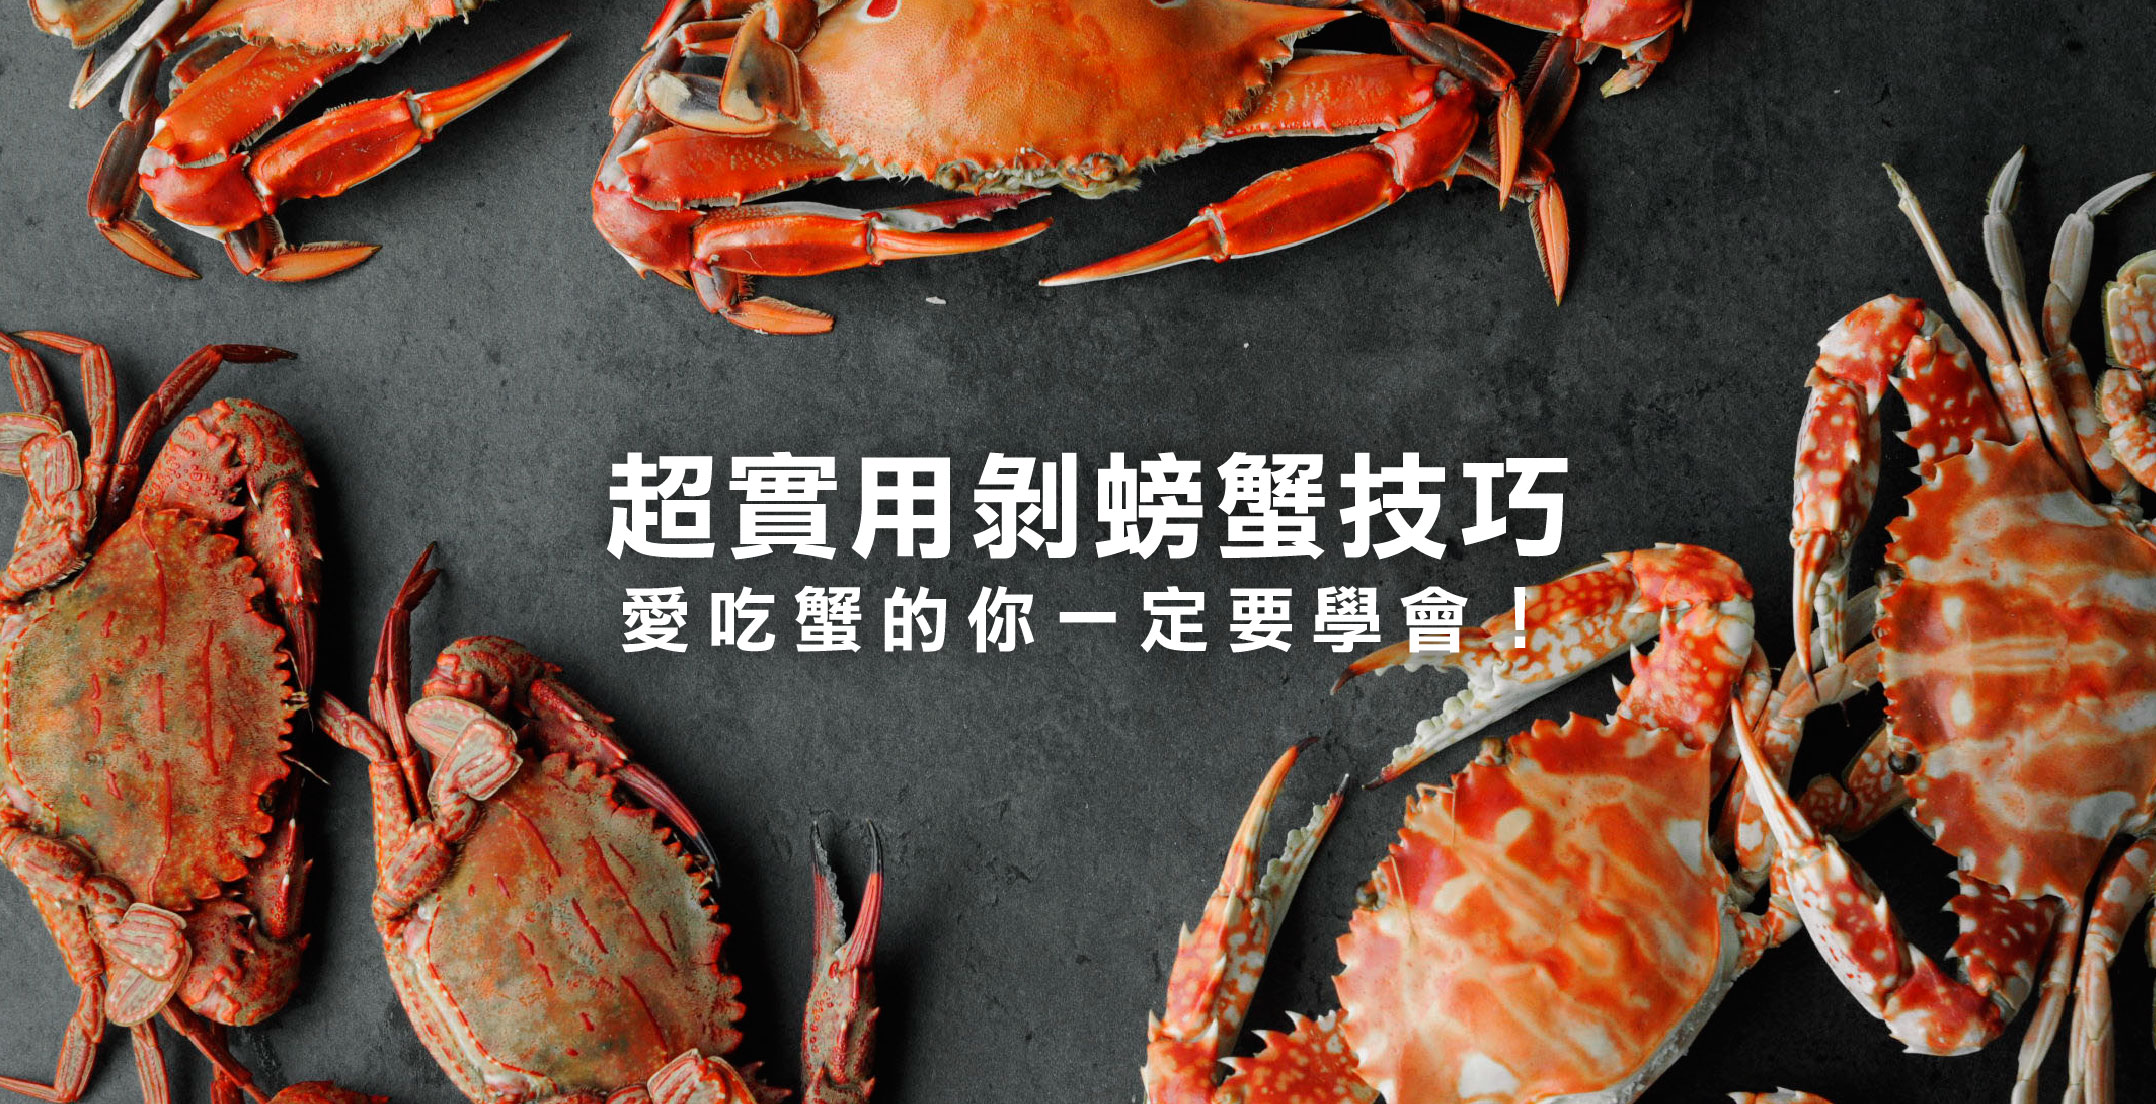 食用螃蟹技巧｜螃蟹哪些部位不能吃＆螃蟹輕鬆剝殼６步驟在這邊